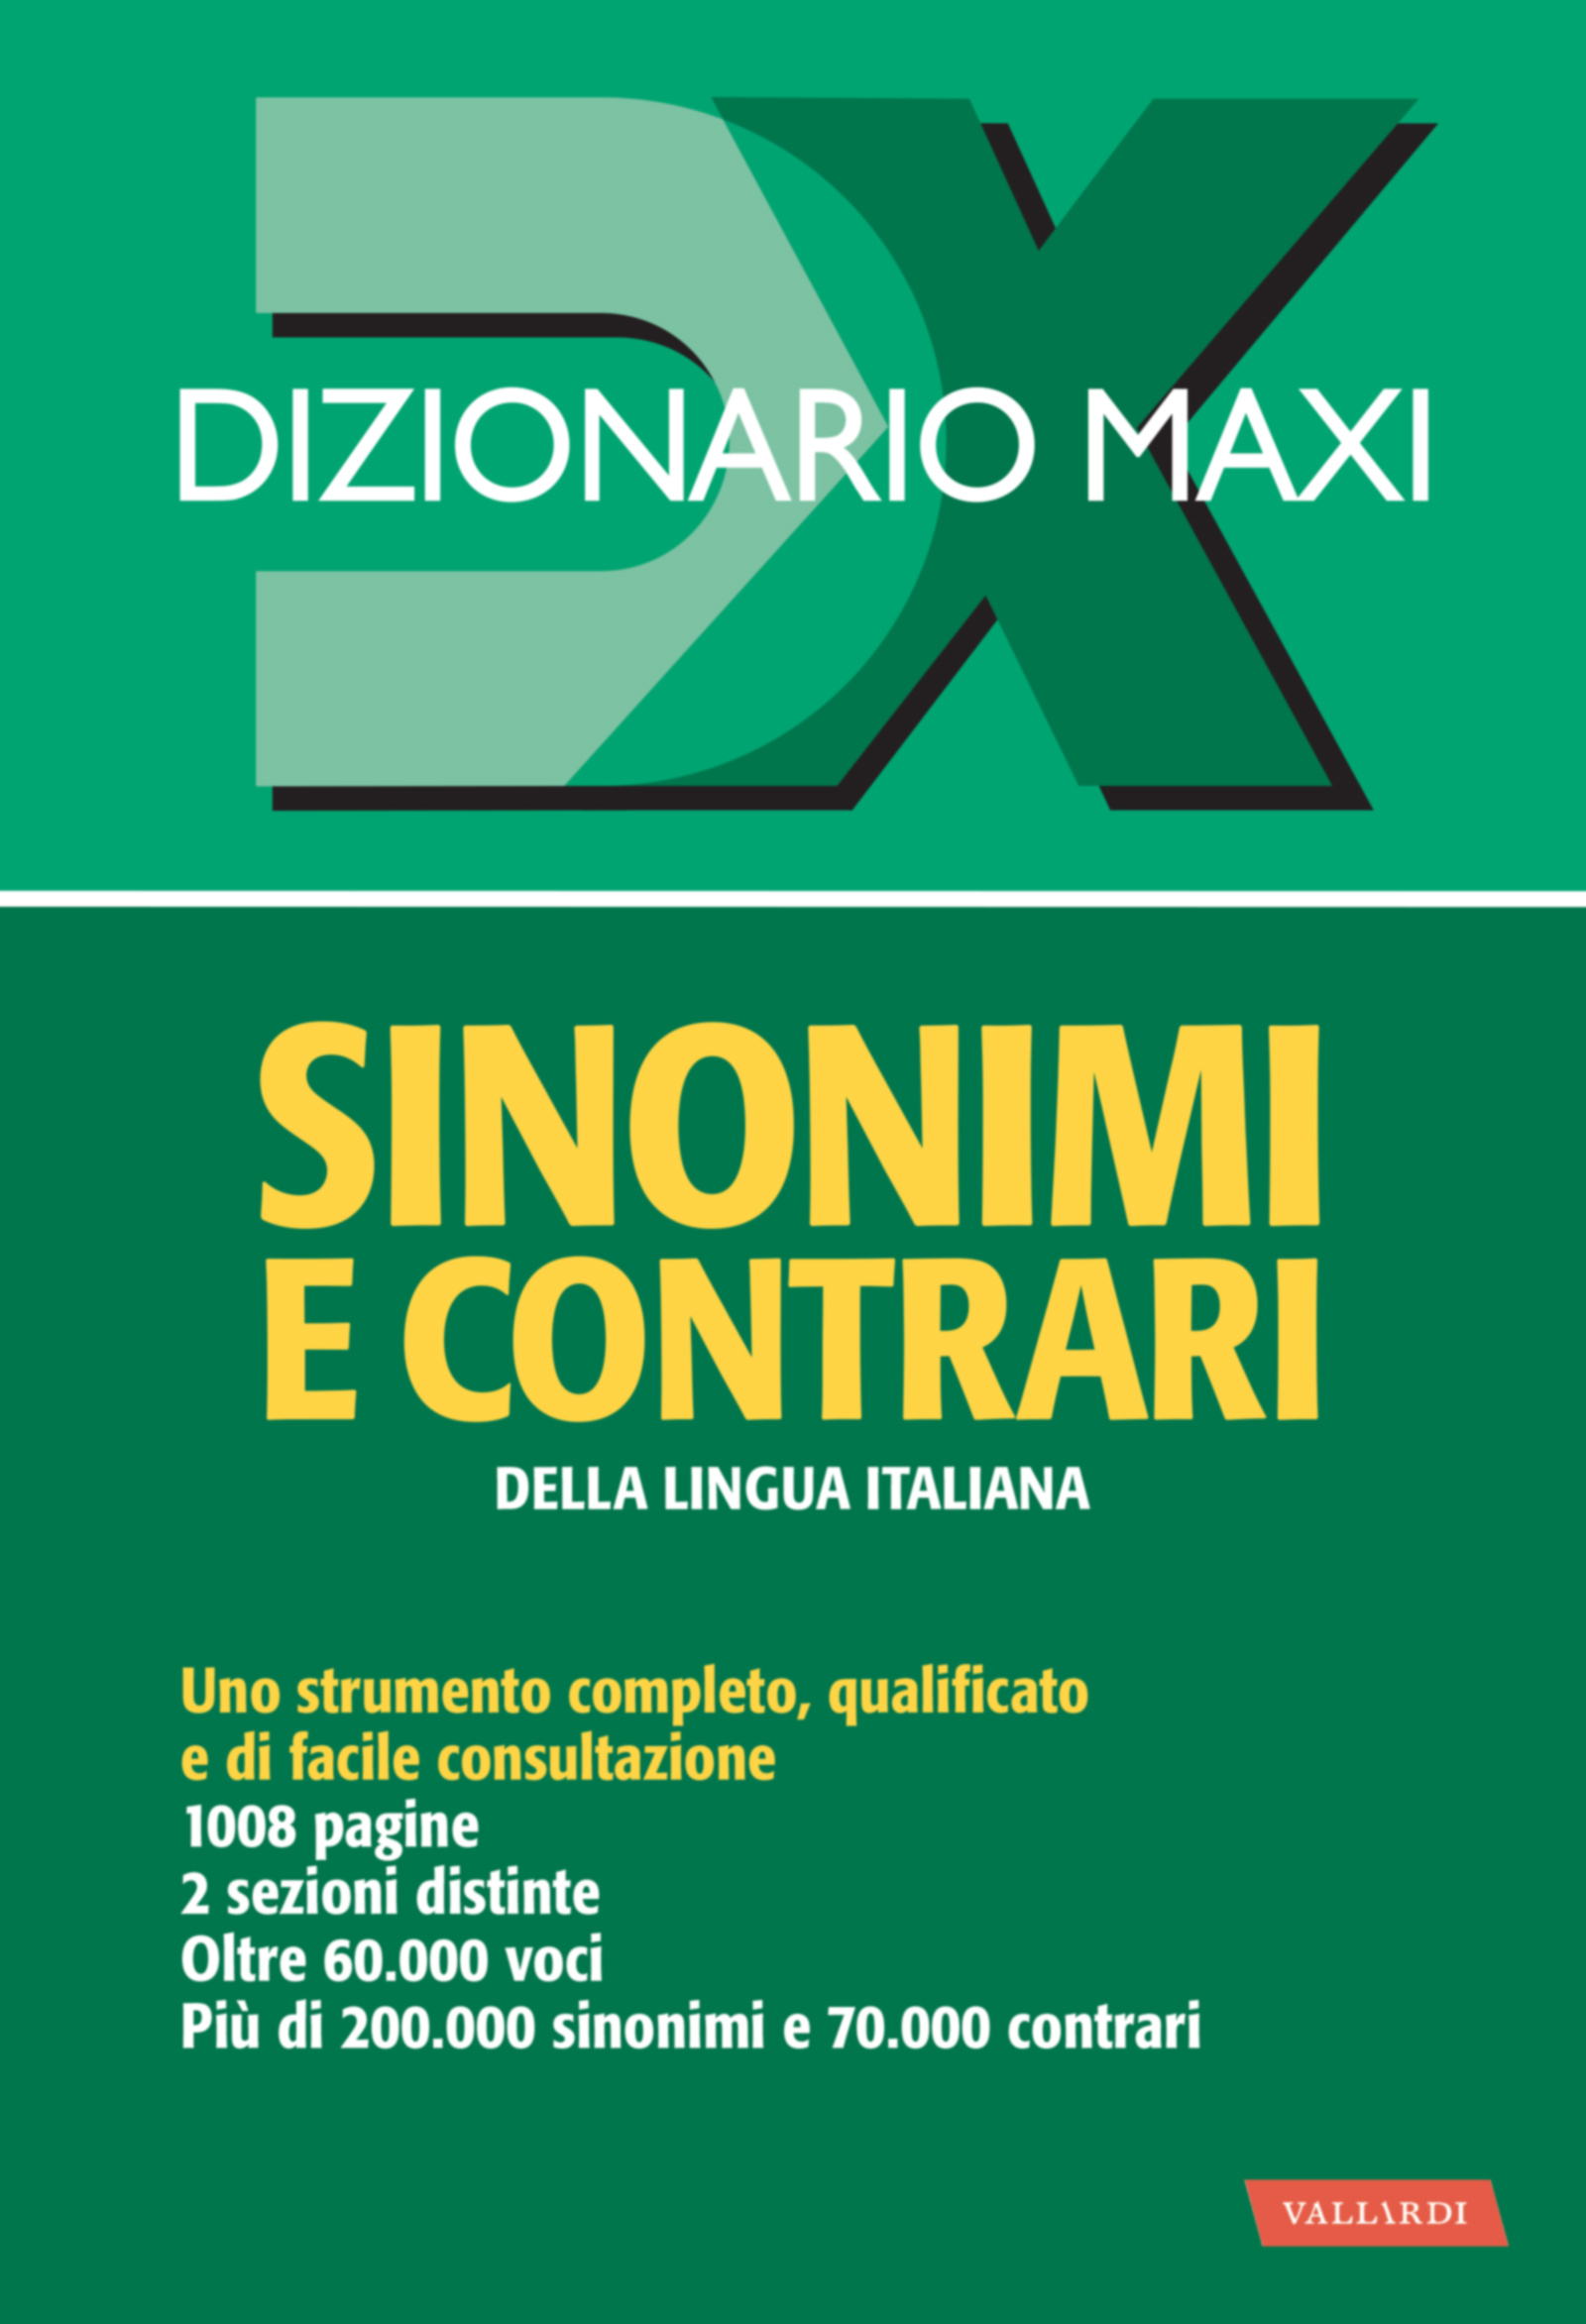 Image of Dizionario maxi. Sinonimi e contrari della lingua italiana